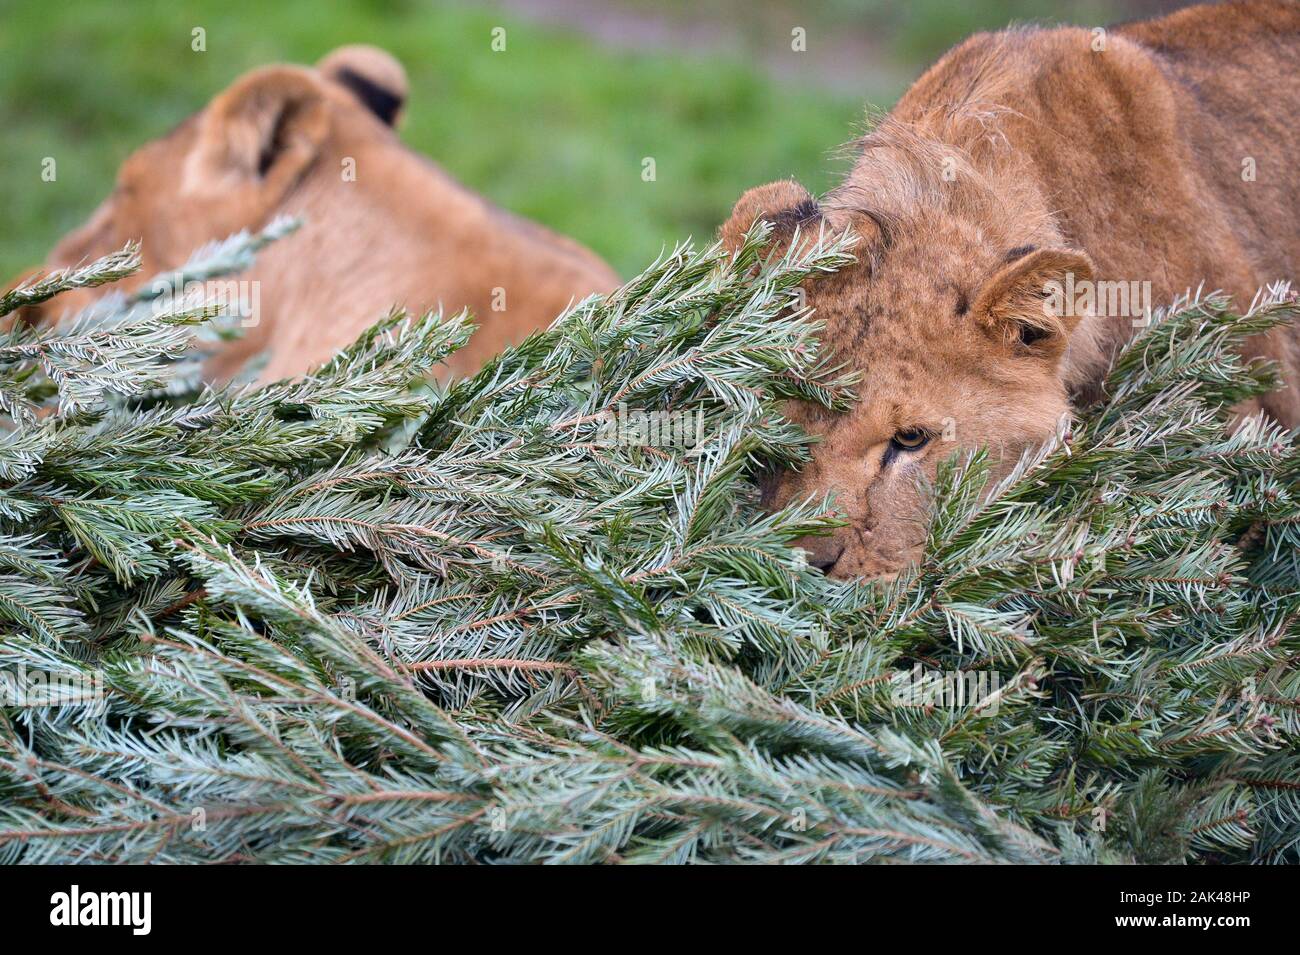 Ein Löwe schnuppert und Knabbereien ein Weihnachtsbaum in der Lion-Gehäuse an der Arche Noah Zoo Farm, Wraxall, Somerset, wo Leute angeregt werden, ihre alten Weihnachtsbäume für die zootiere Bereicherung und Freude zu spenden. Stockfoto